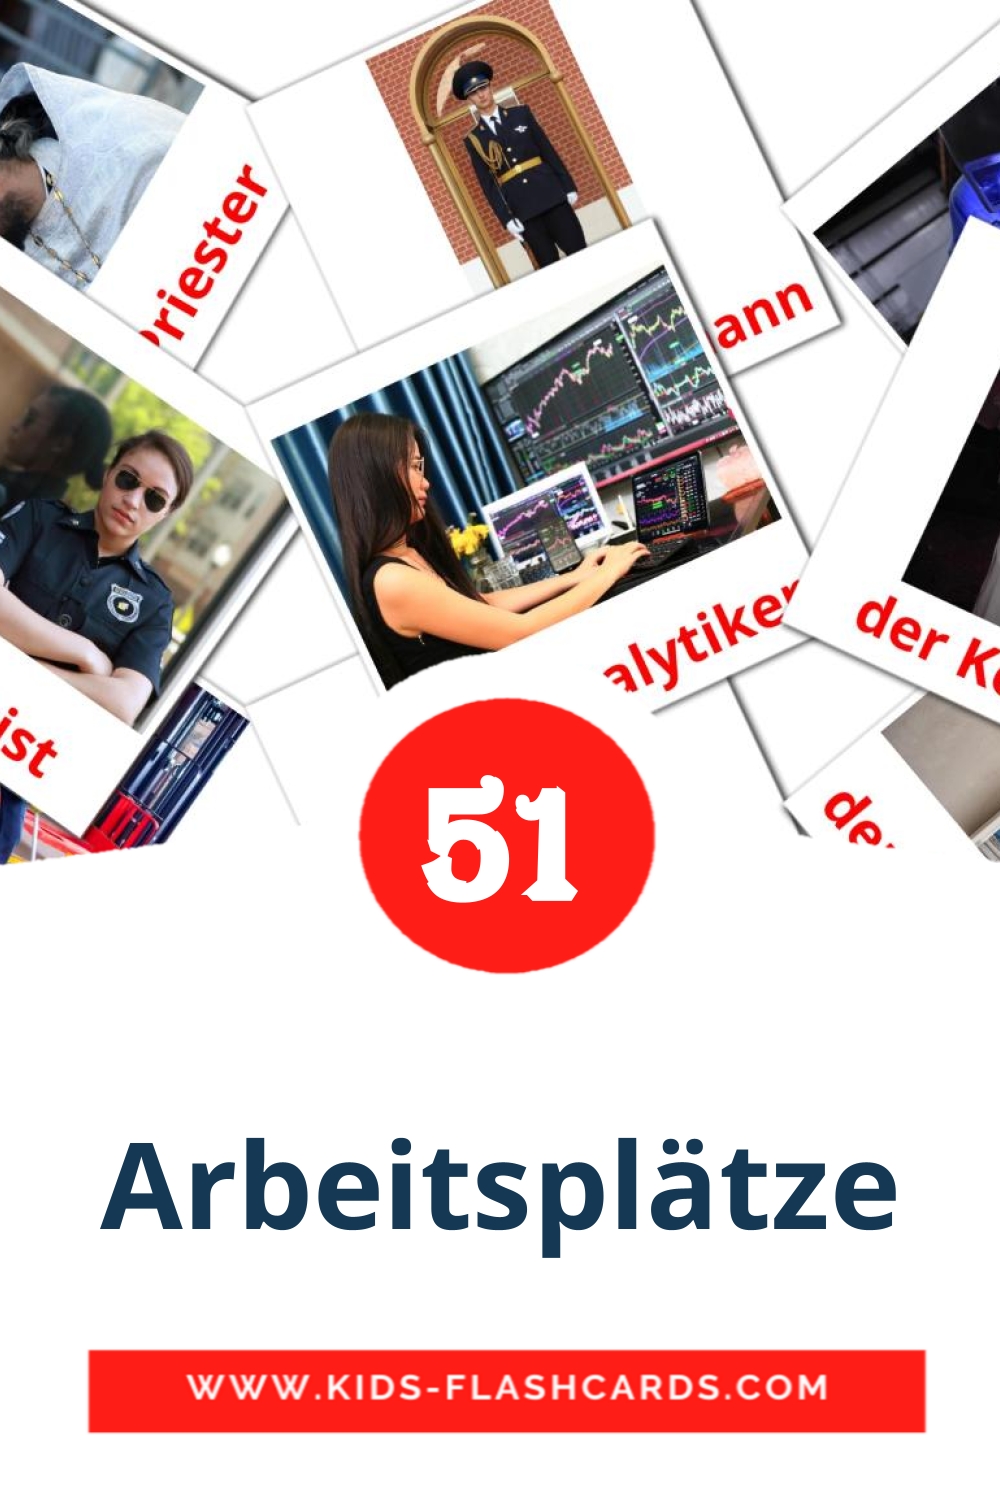 51 tarjetas didacticas de Arbeitsplätze para el jardín de infancia en alemán